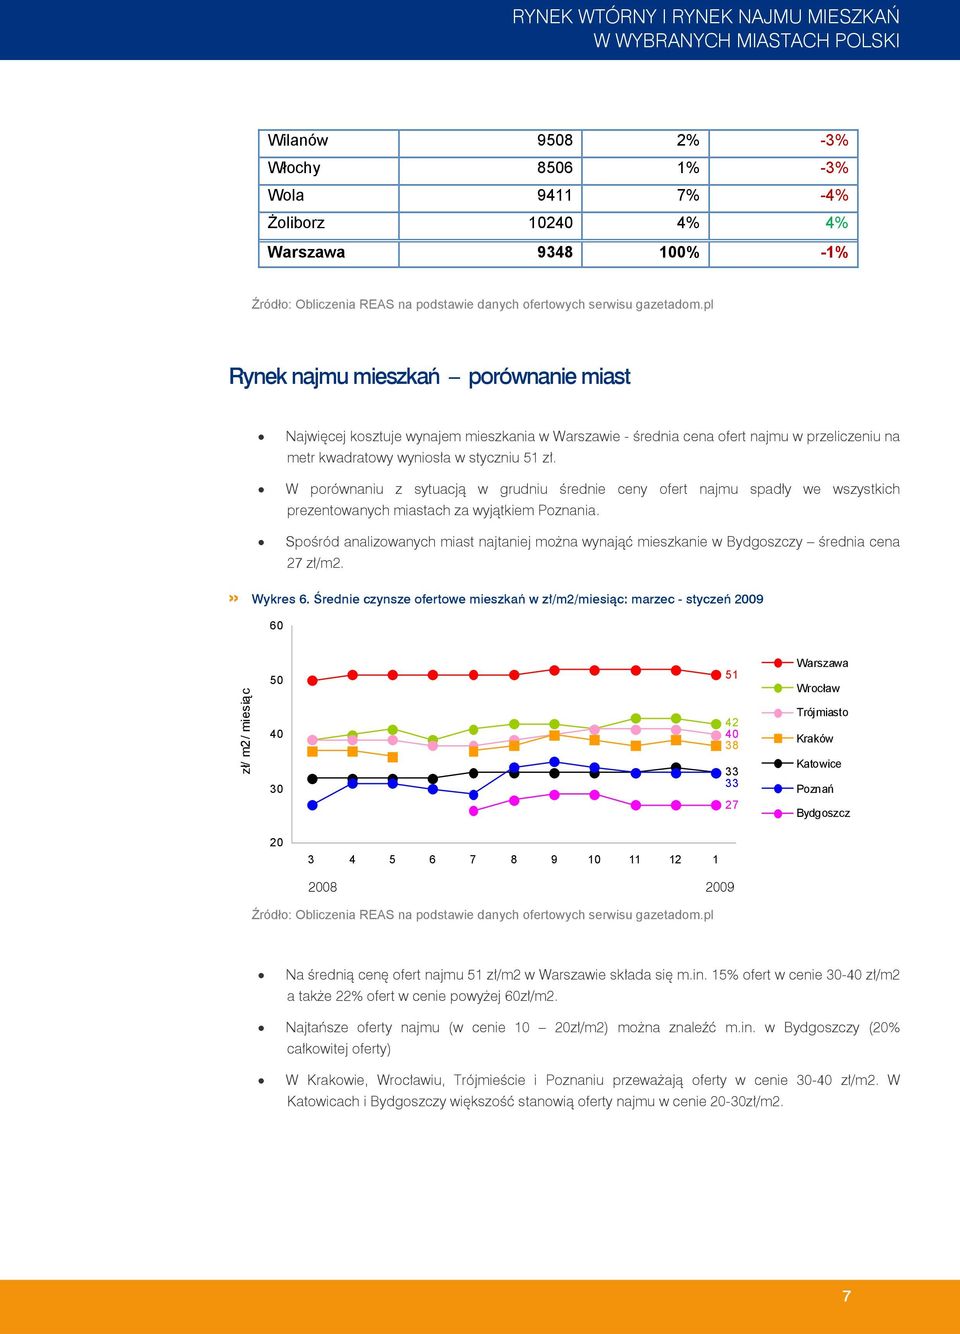 Spośród analizowanych miast najtaniej można wynająć mieszkanie w Bydgoszczy średnia cena 27 zł/m2.» Wykres 6.